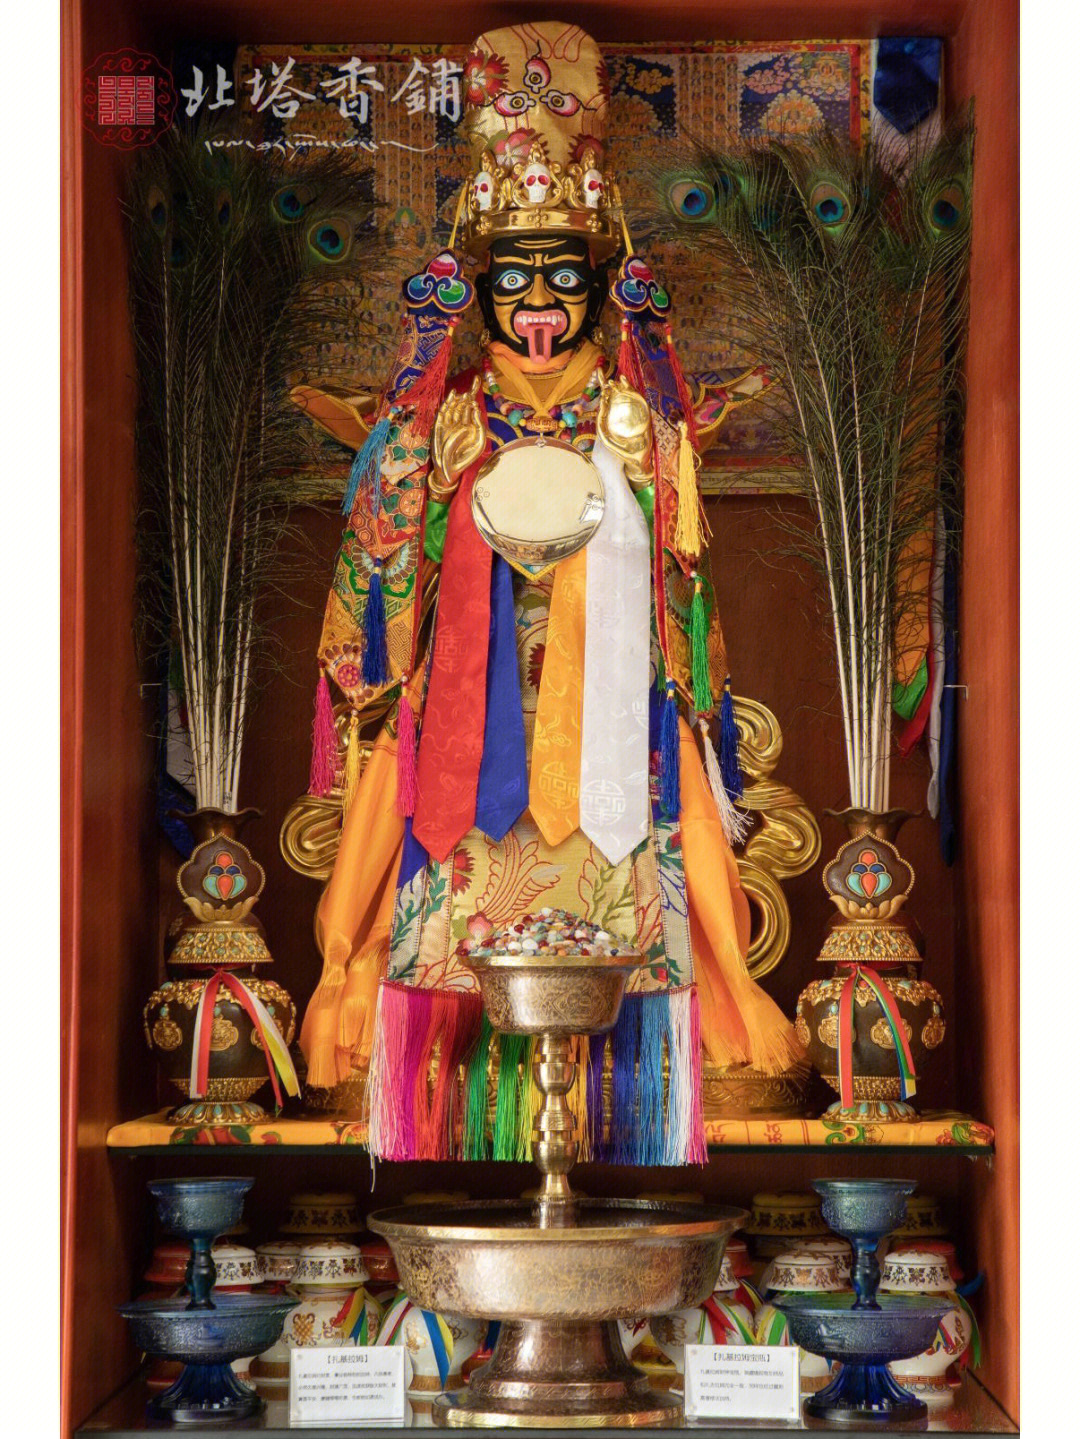 扎基拉姆是藏地特别有名的财神护法,每周三是供奉扎基拉姆的吉祥日子